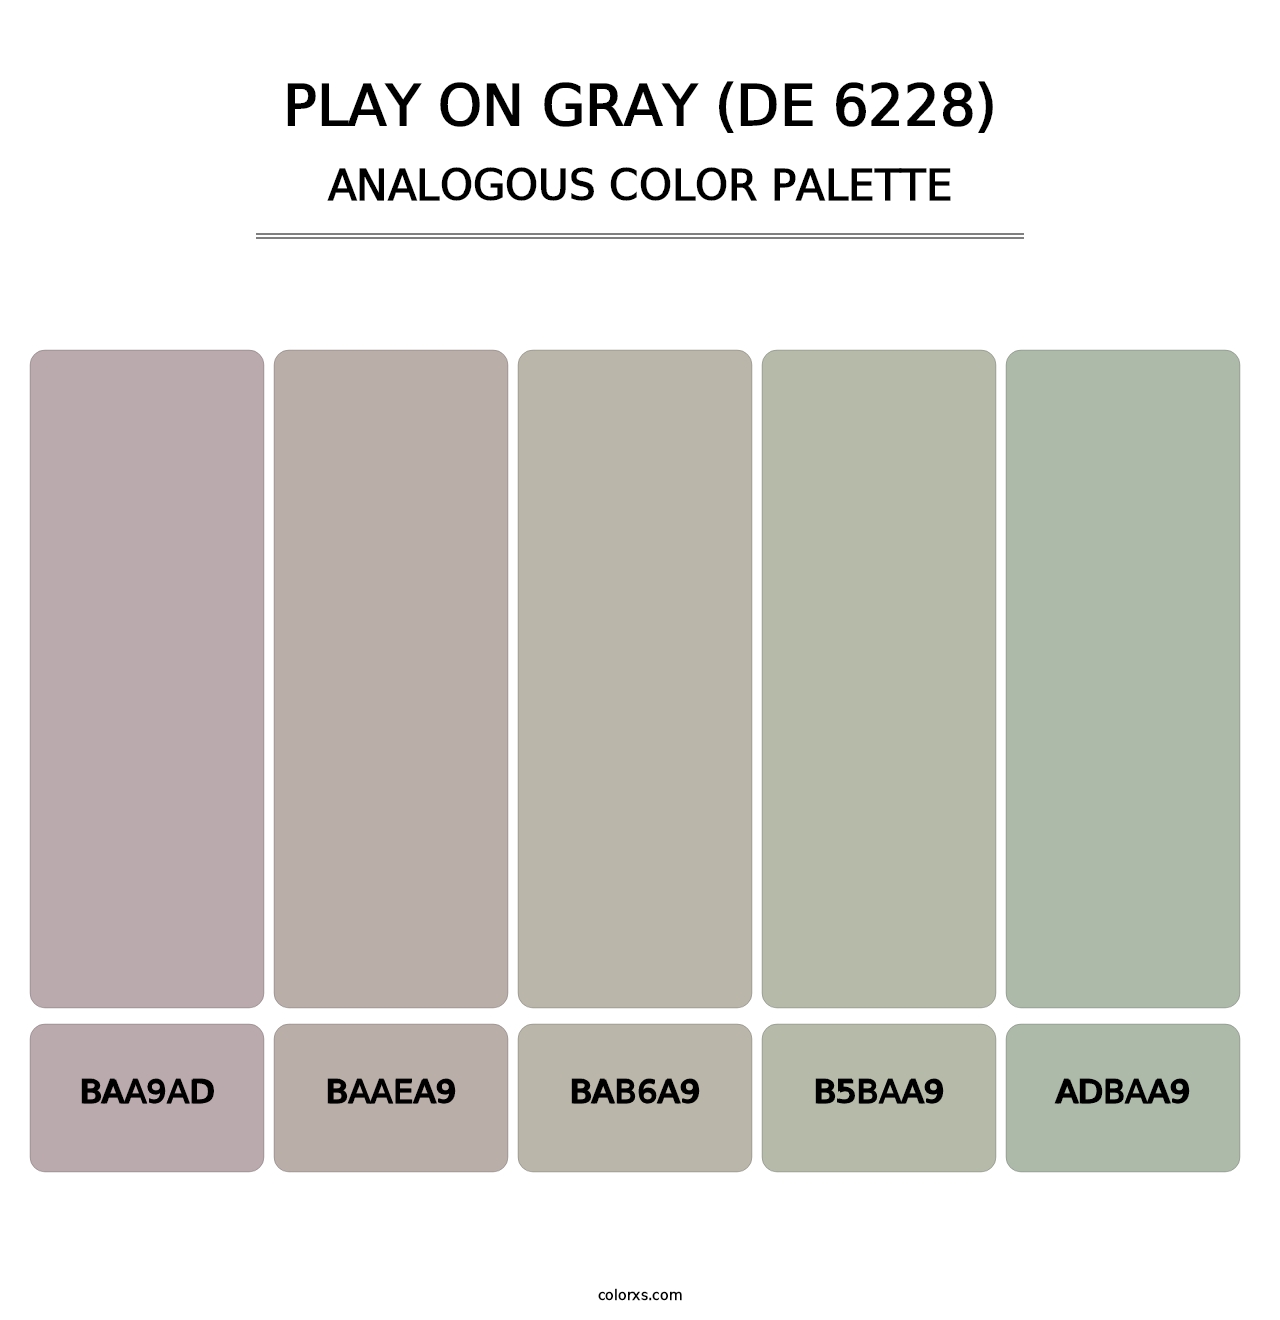 Play on Gray (DE 6228) - Analogous Color Palette